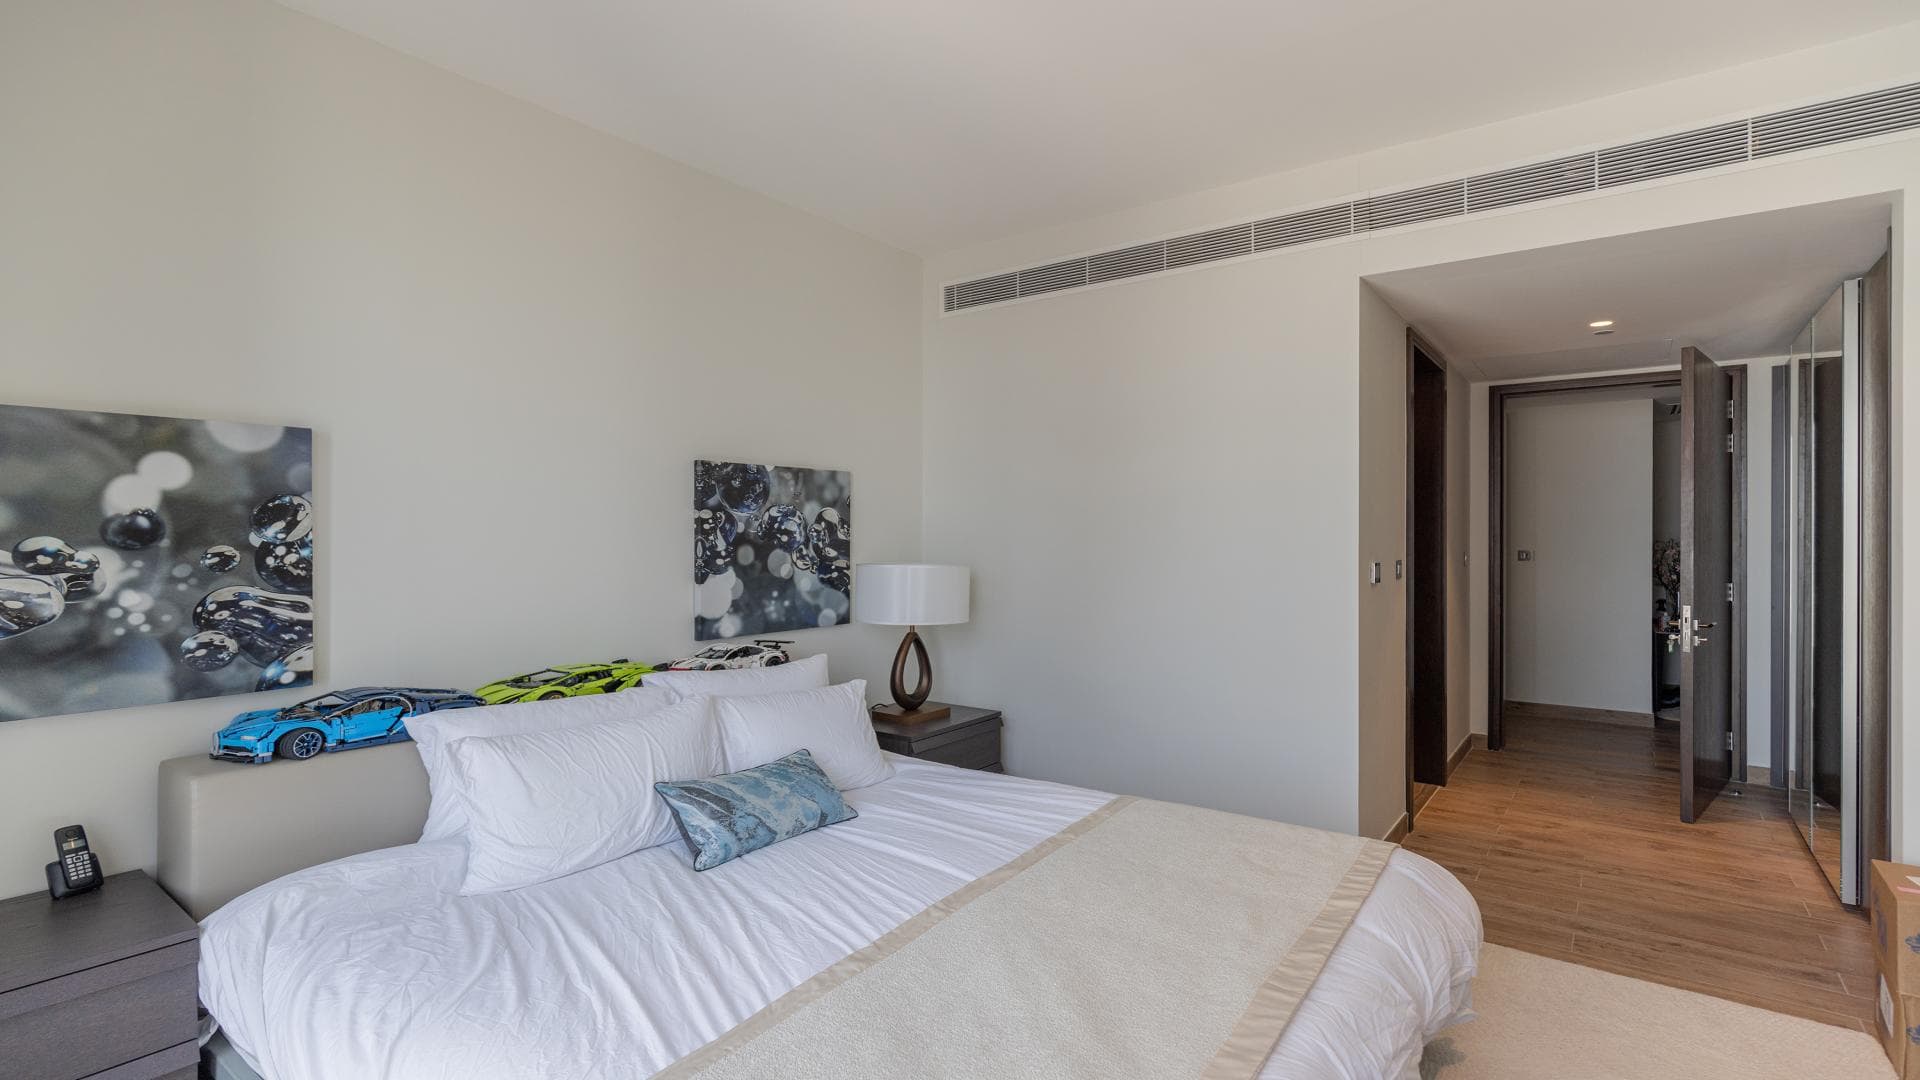 2 Bedroom Apartment For Rent Marina Gate Lp14854 1794166c13d18d00.jpg